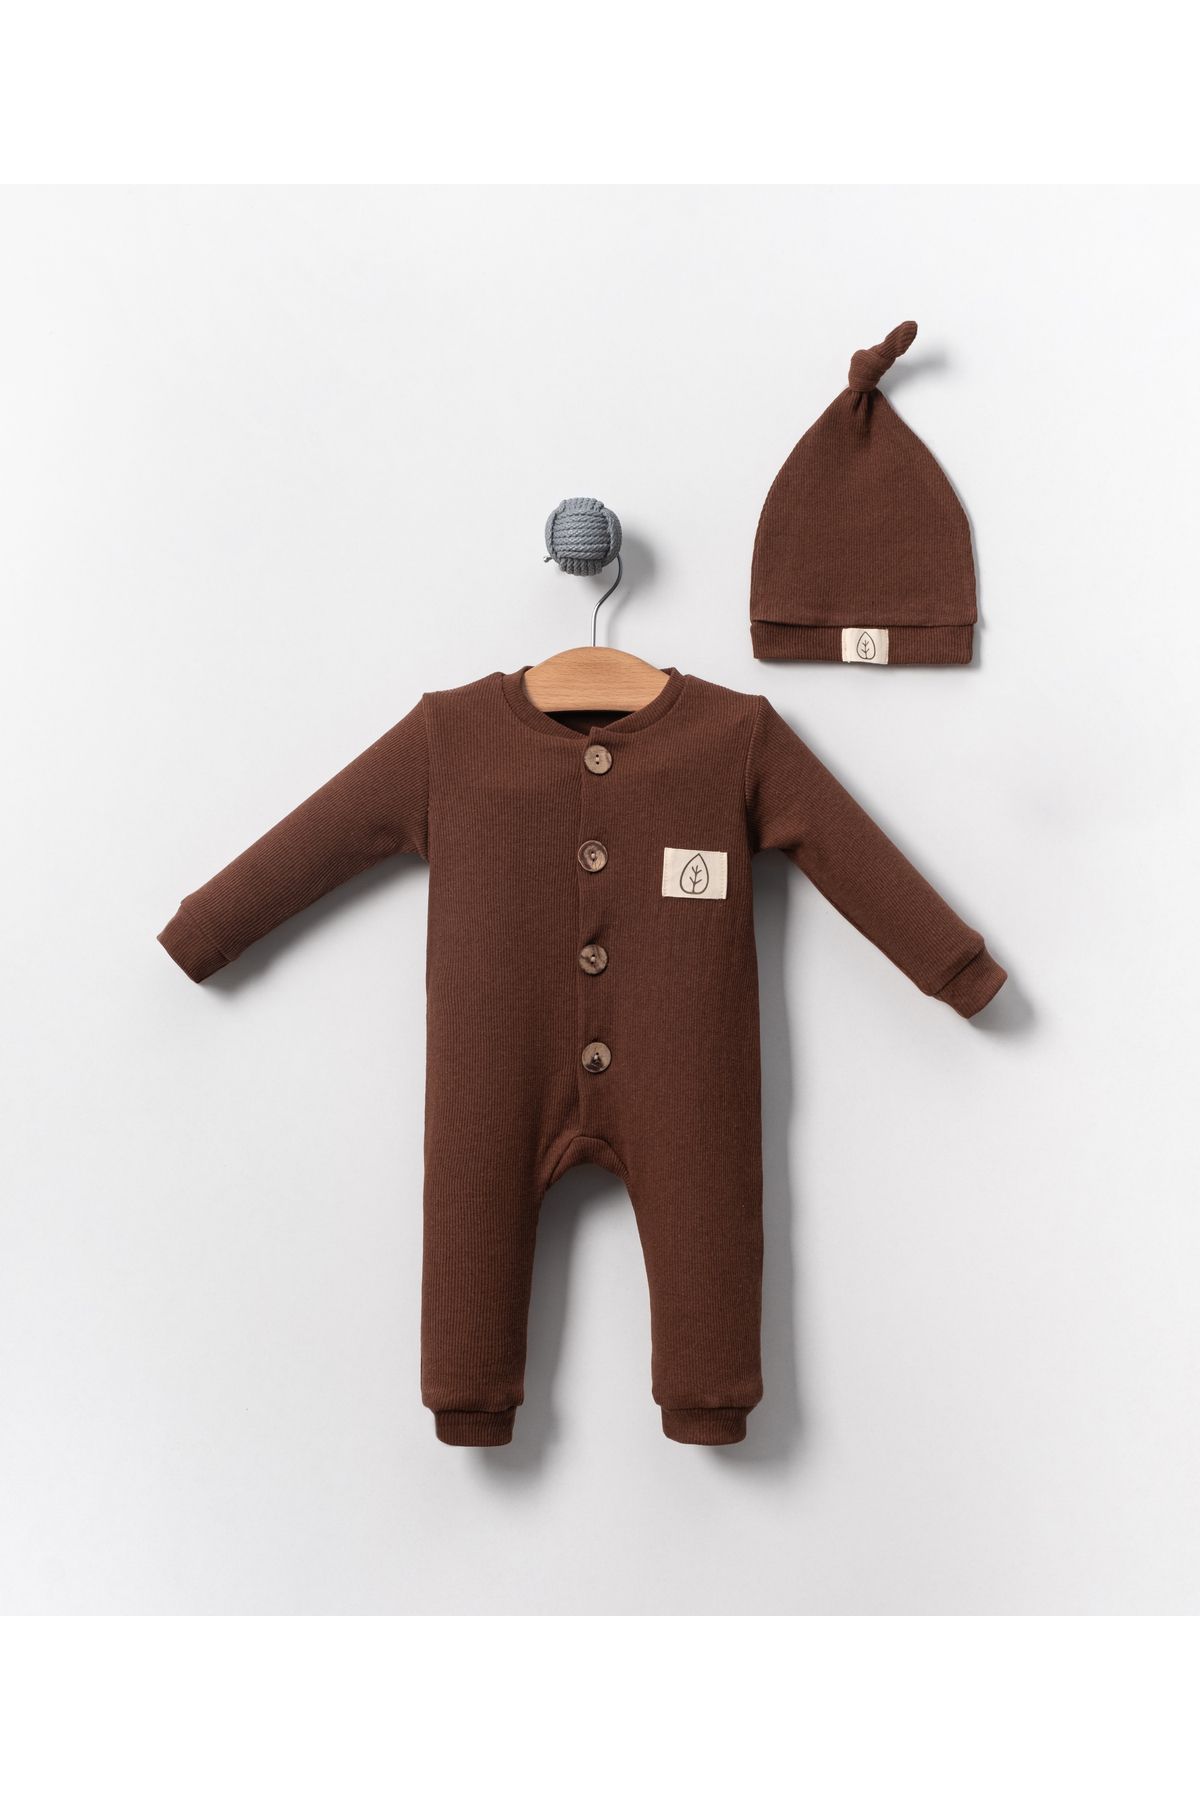 Bubito Unisex Tahta Düğme Görselli Şapkalı Şık Bebek Tulum-Kahverengi